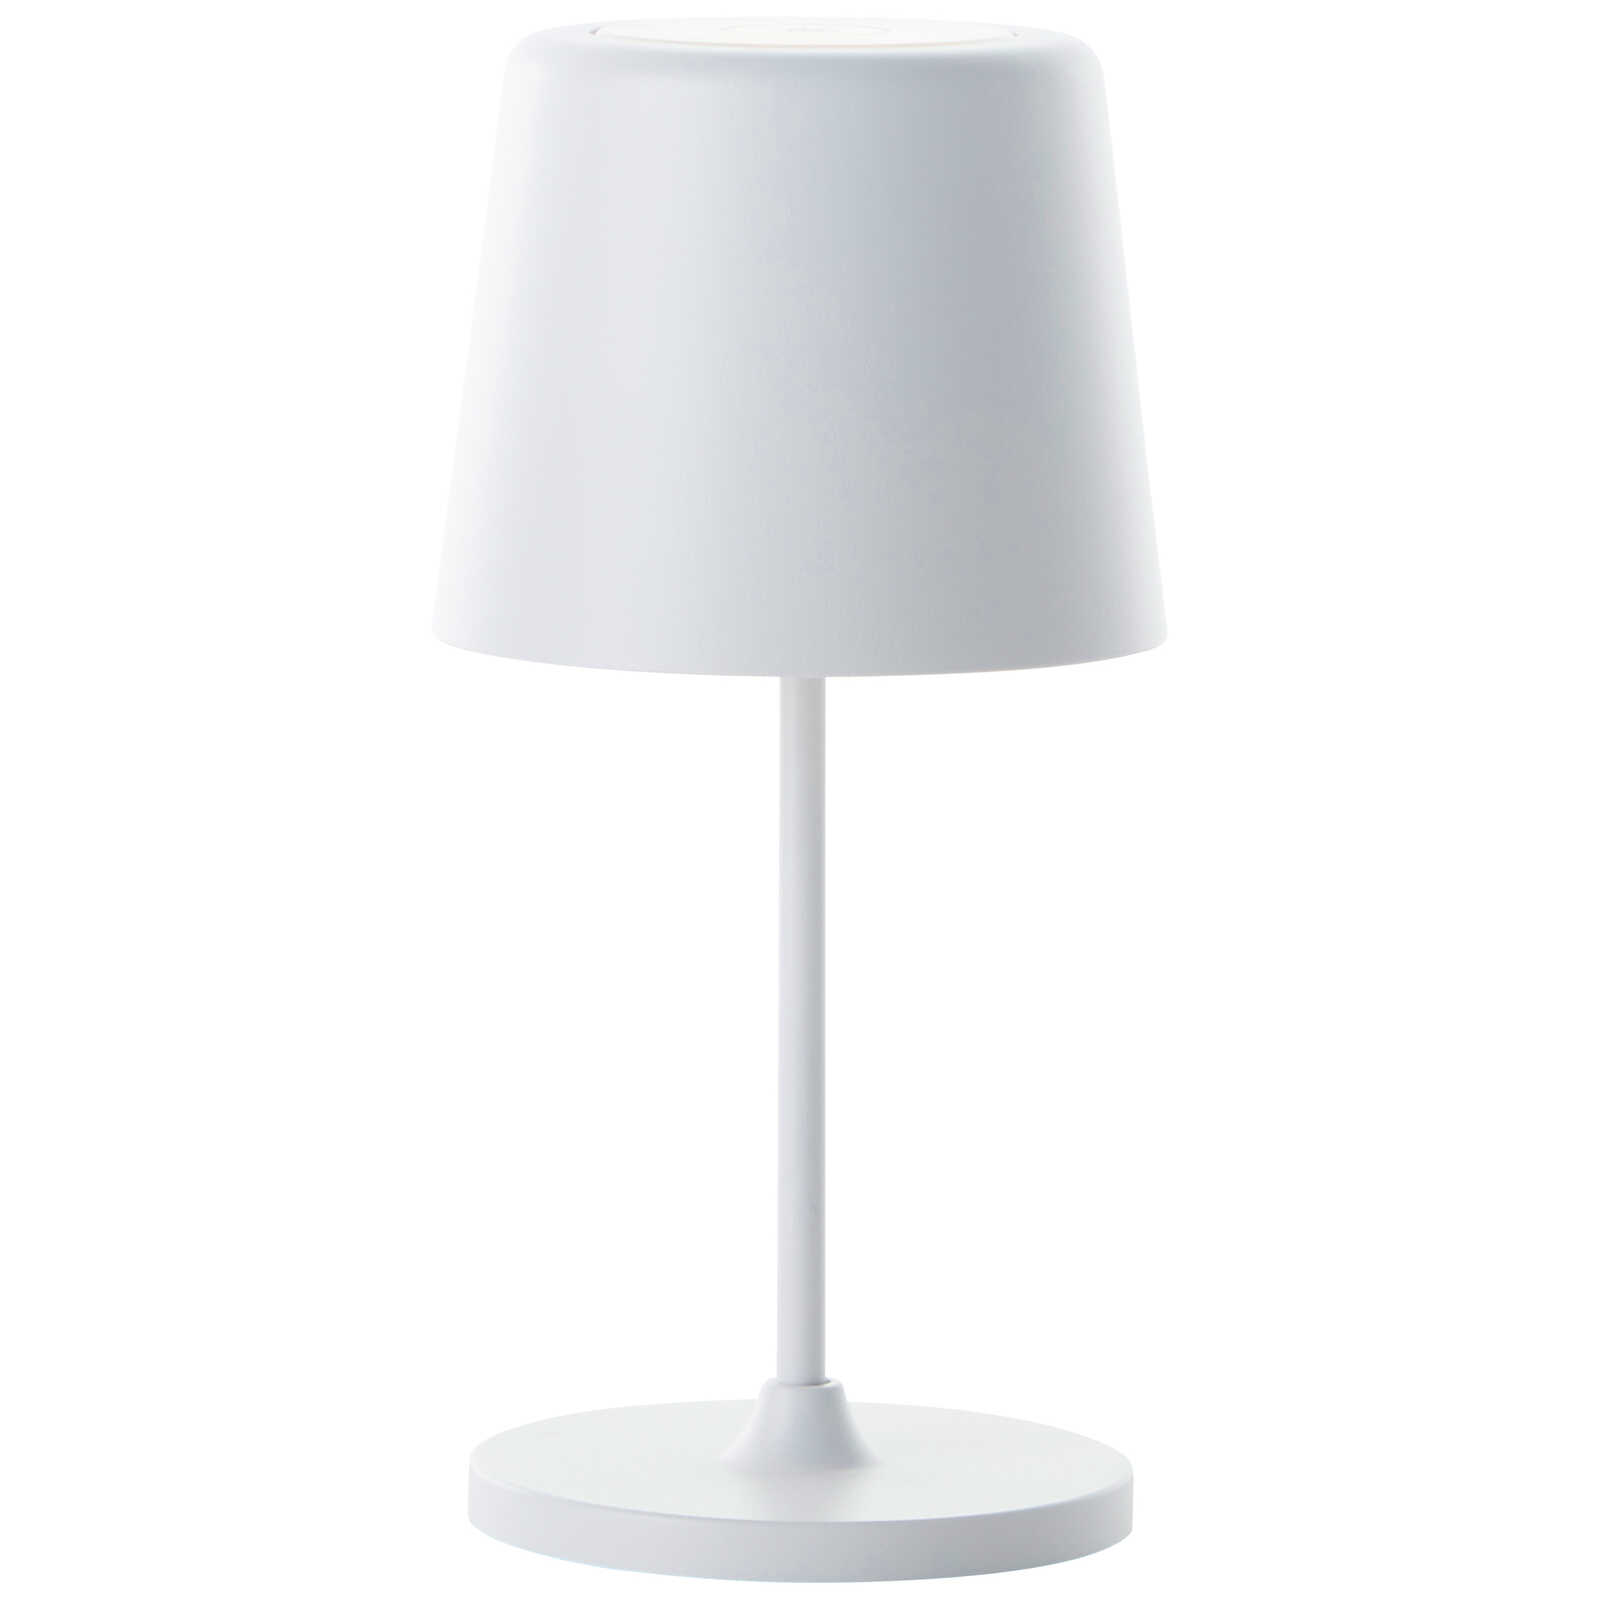             Lampe de table en métal - Cosy 5 - Blanc
        